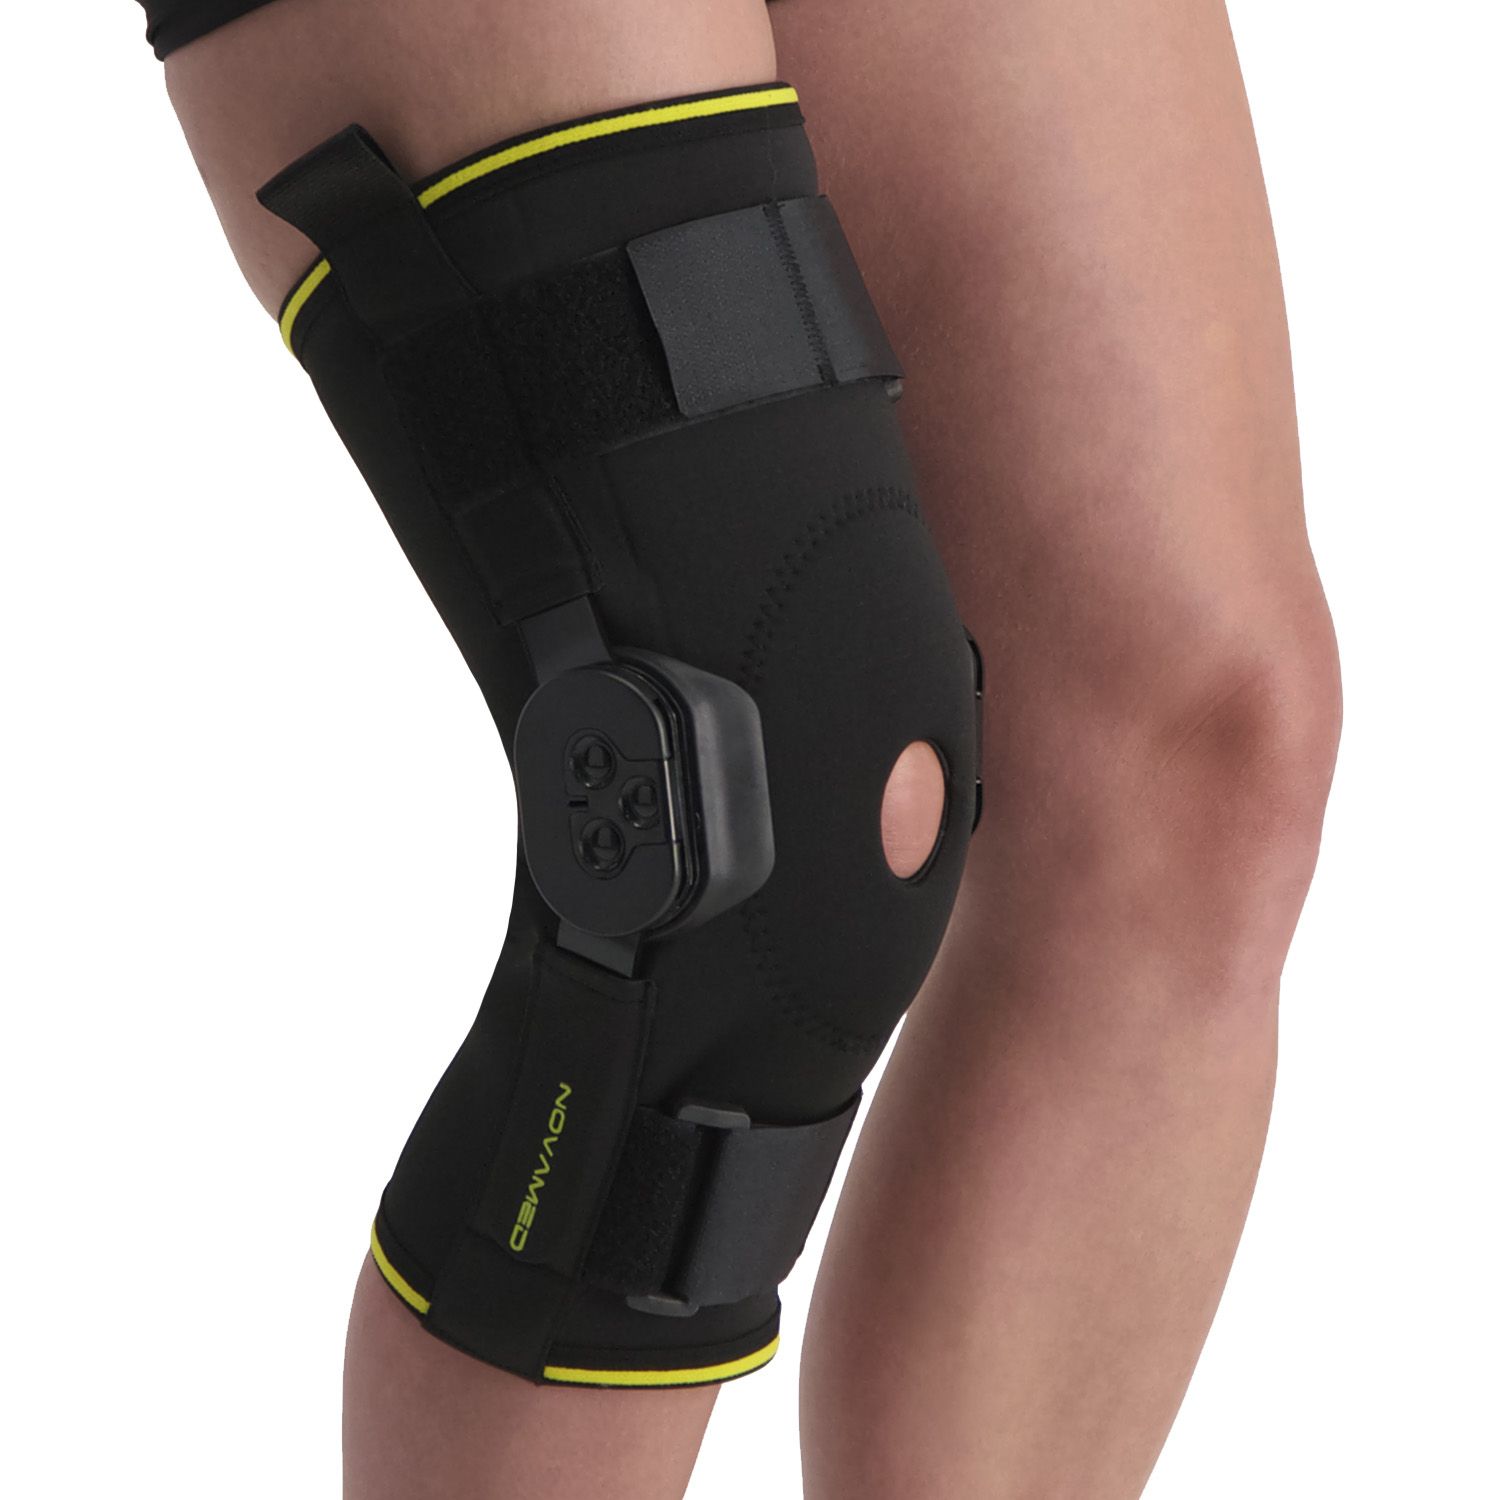 novamed knee support with adjustable hinges